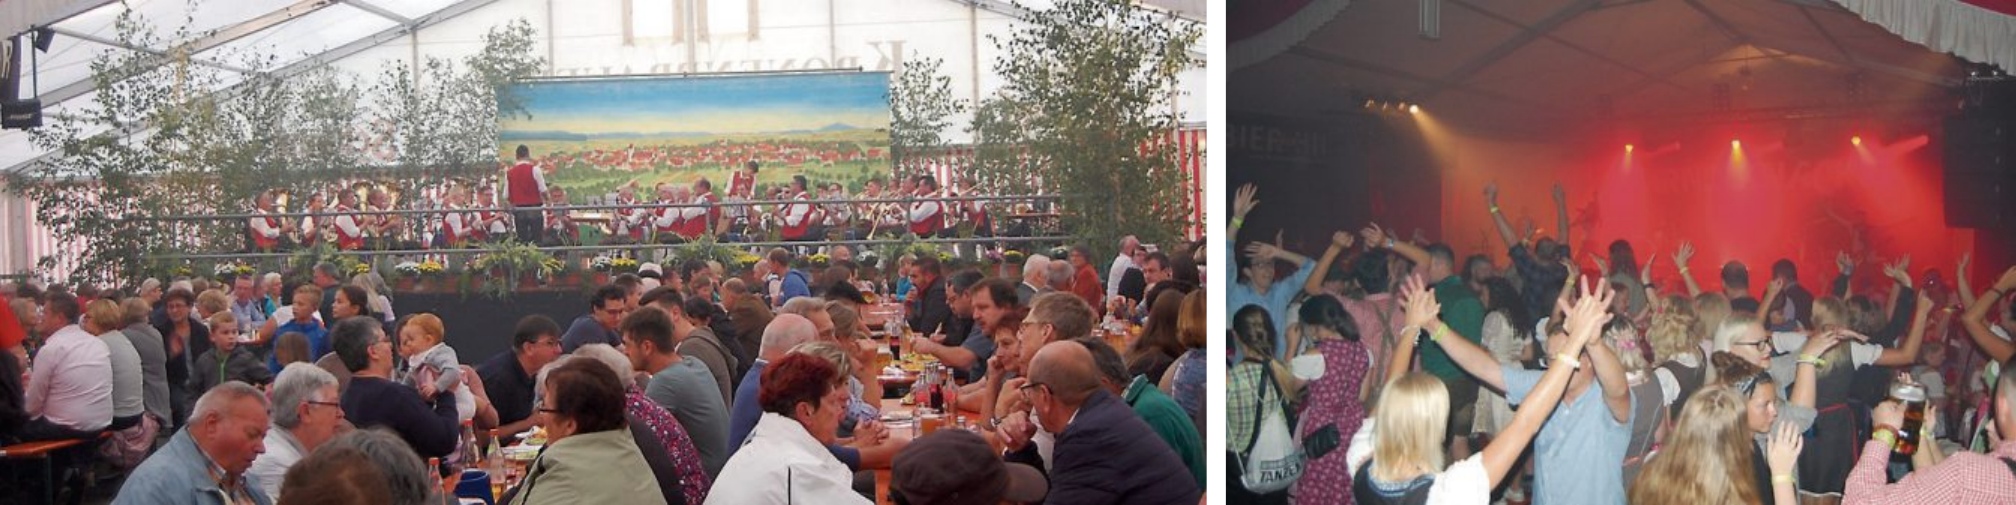 Die Festbesucher können sich auf gesellige Stunden im Festzelt freuen (unten). Bilder: Uhland2, Agenturfoto